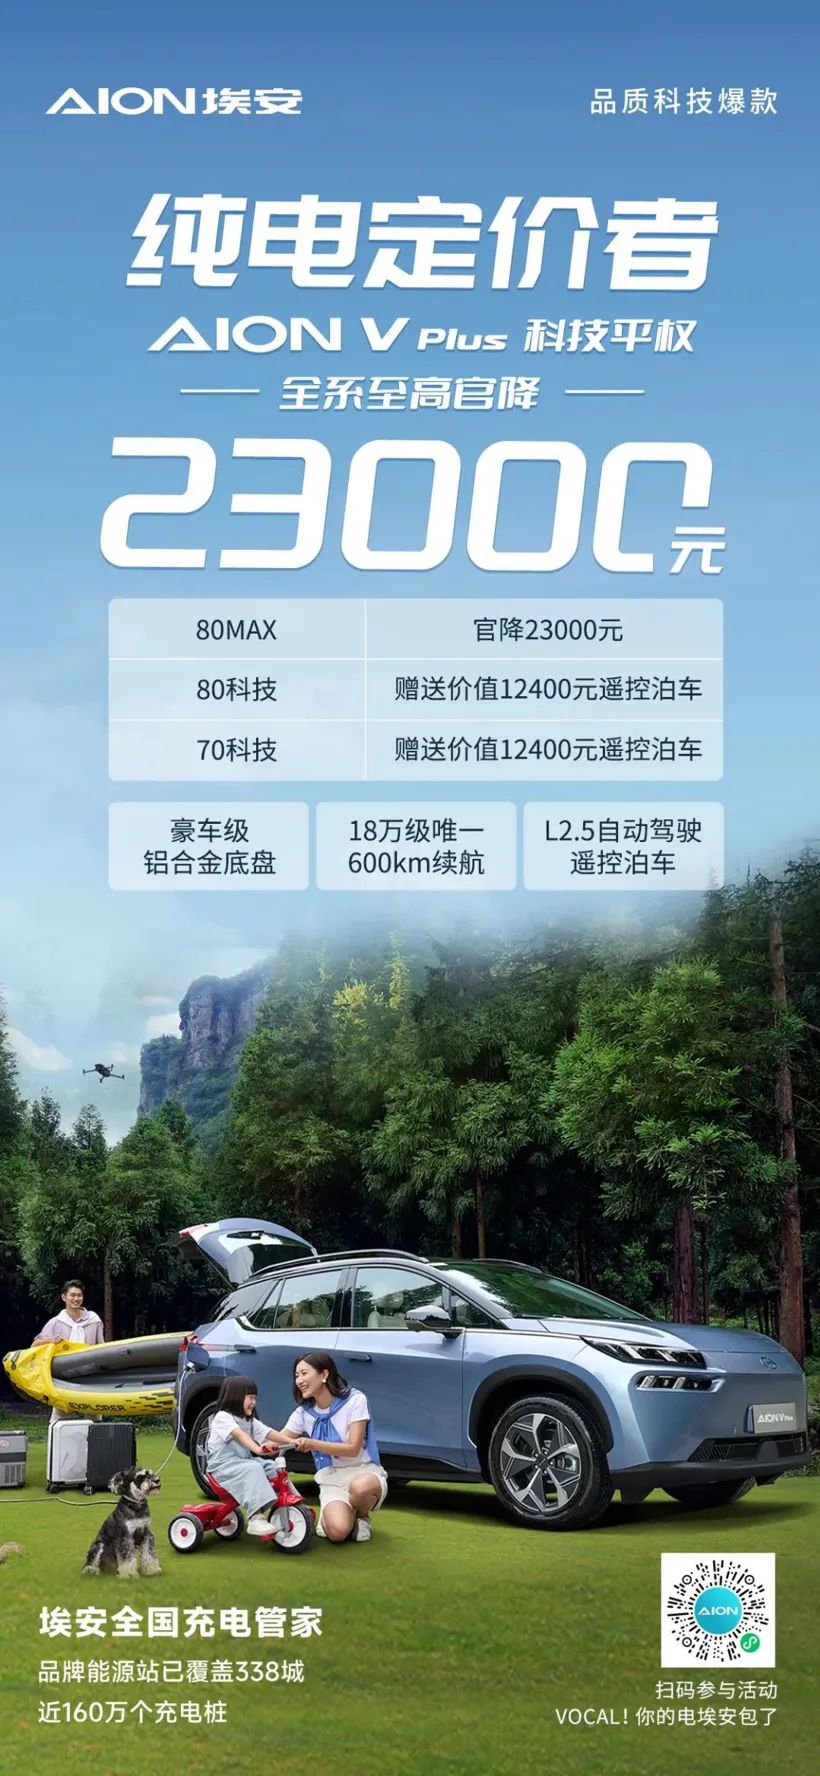 ಎಲ್ಲಾ GAC Aion V Plus ಸರಣಿಗಳ ಬೆಲೆ RMB 23,000 ಅತ್ಯಧಿಕ ಅಧಿಕೃತ ಬೆಲೆಗೆ